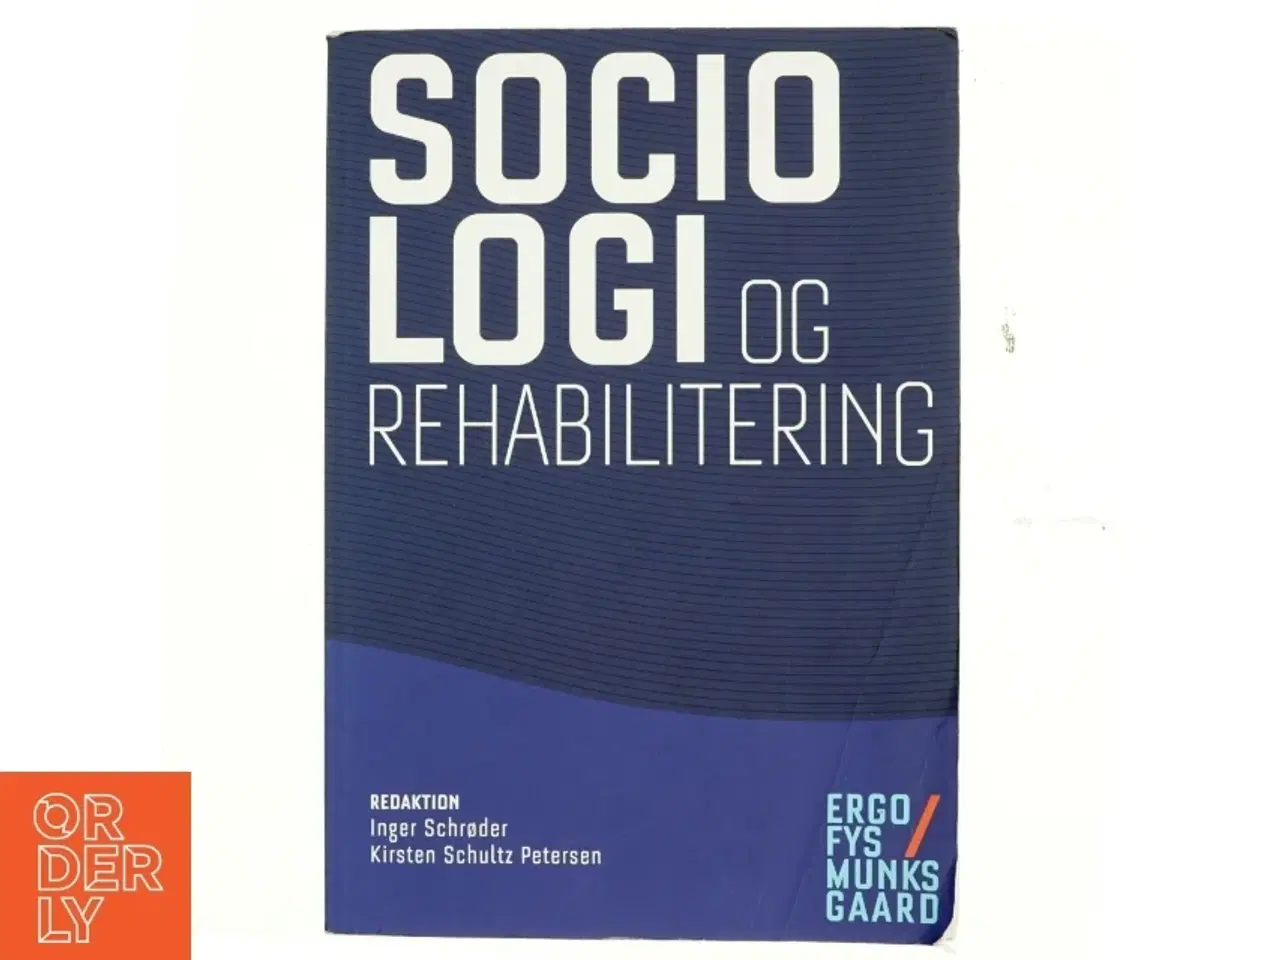 Billede 1 - Sociologi og rehabilitering (Bog)